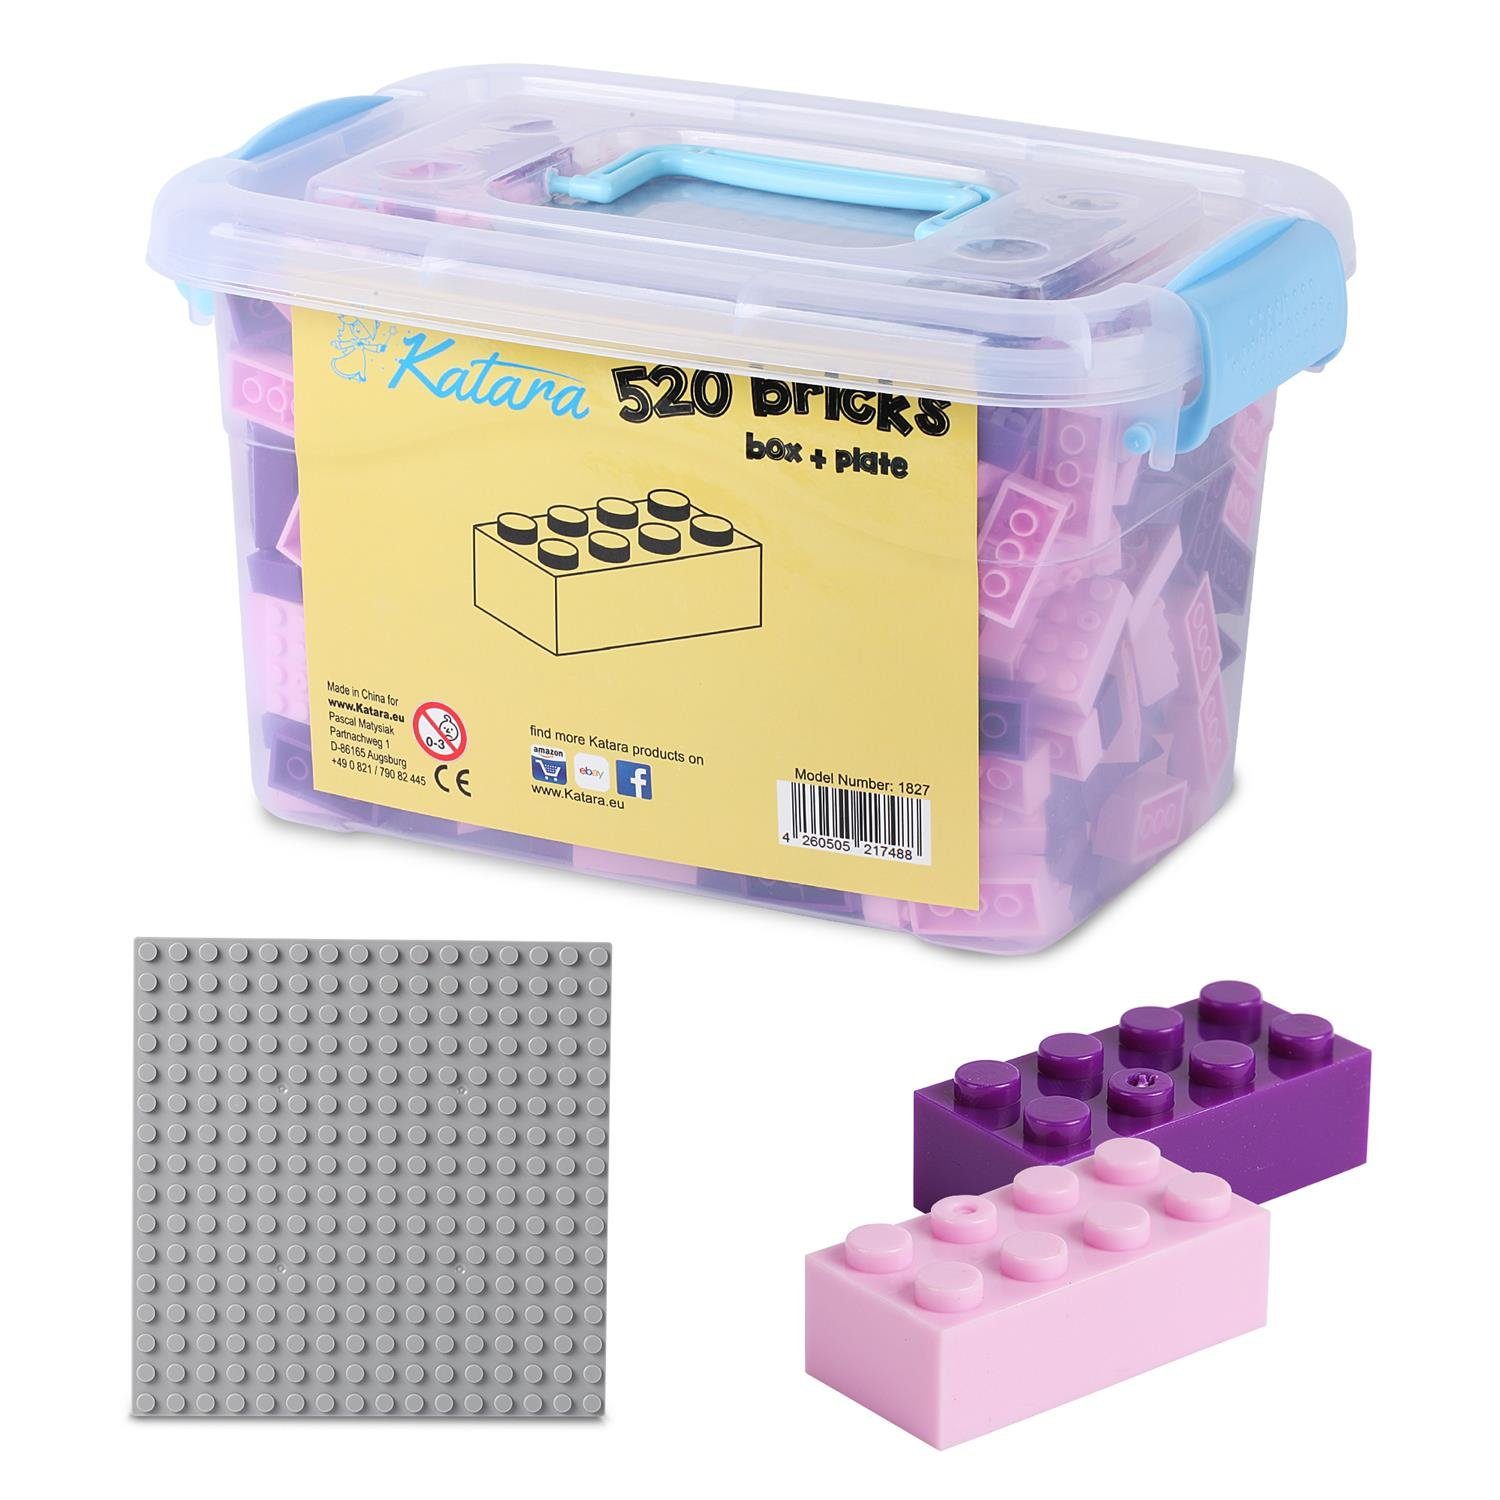 Katara Konstruktionsspielsteine Bausteine Box-Set mit 520 Steinen + Platte + Box, (3er Set), 100% Kompatibel Sluban, Papimax, Q-Bricks, LEGO®